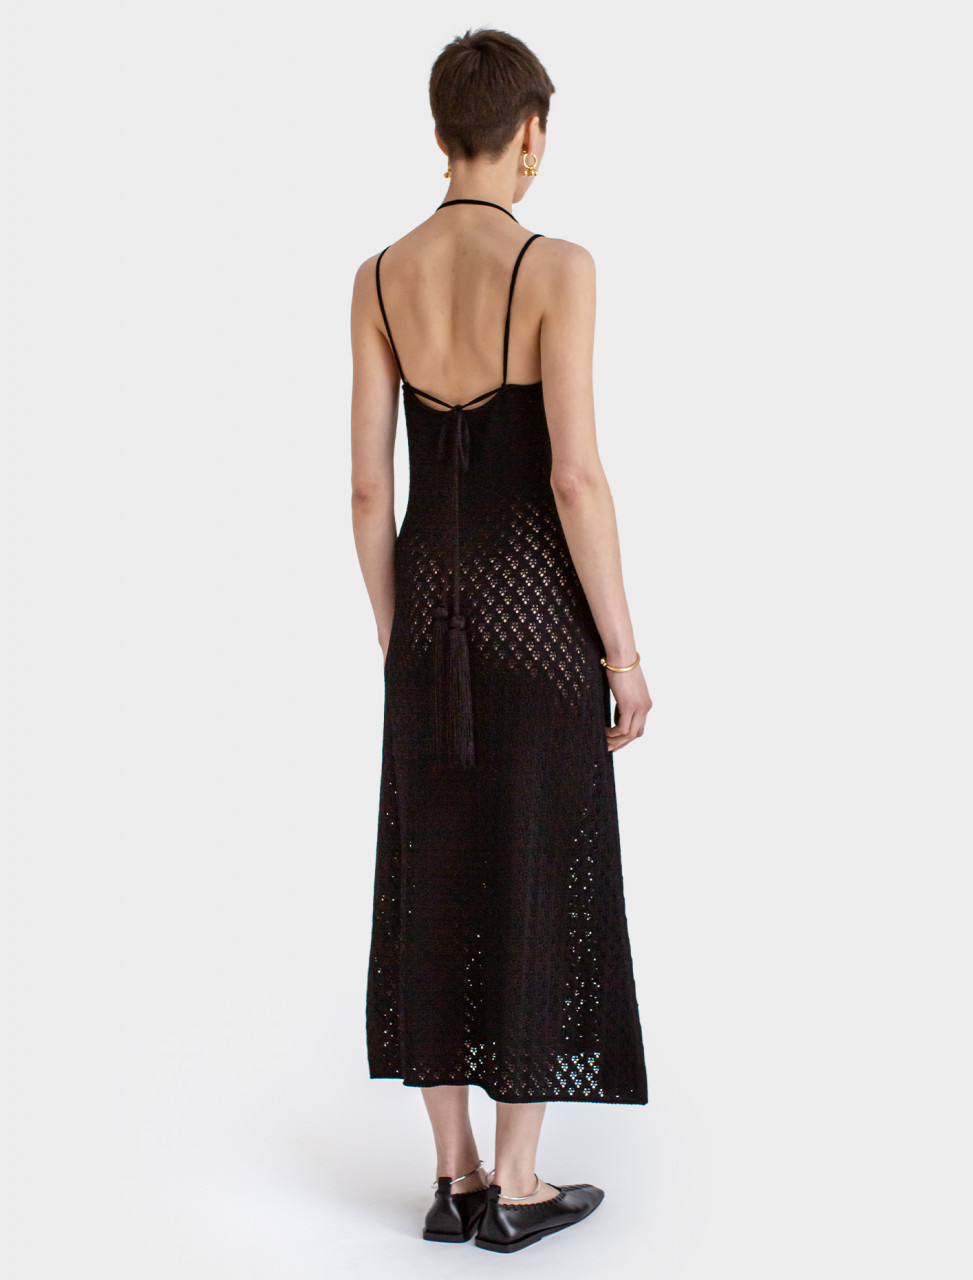 Jil Sander Knitted Dress in Black | Voo Store Berlin | Worldwide Shipping